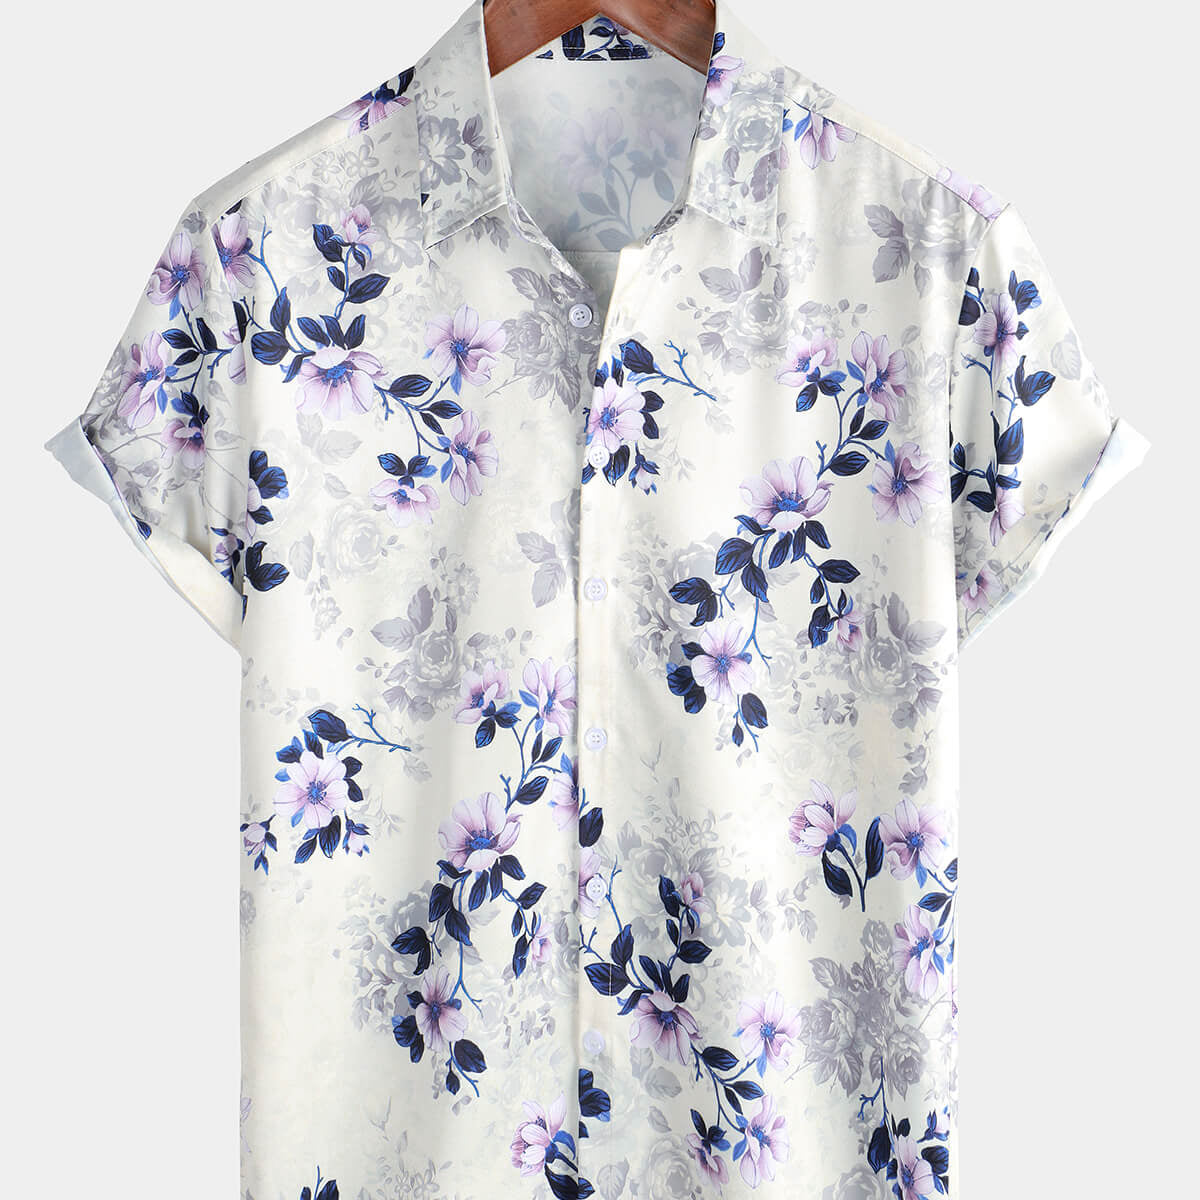 Men's Summer Short Sleeve Floral Print Casual Button Up Shirt